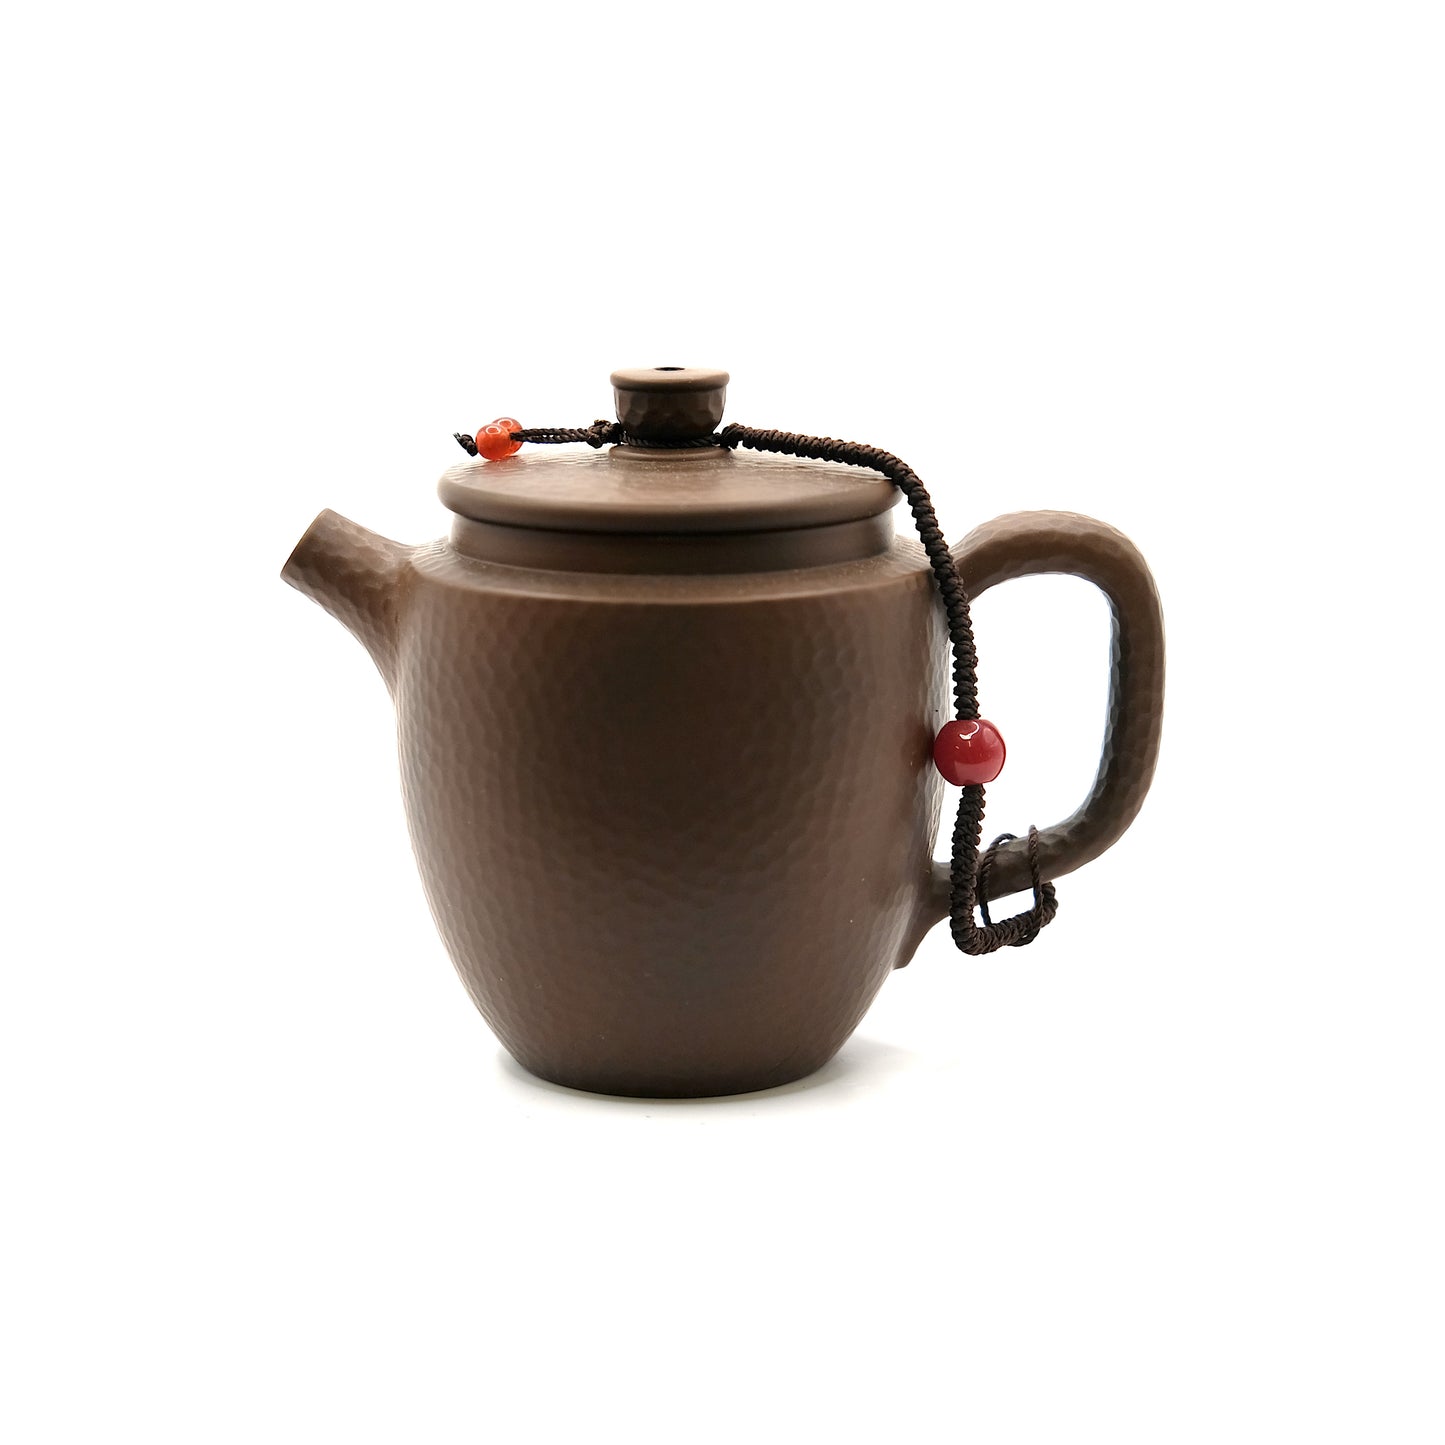 Gong-fu teapot #1135, Jianshui ceramics, 100 ml